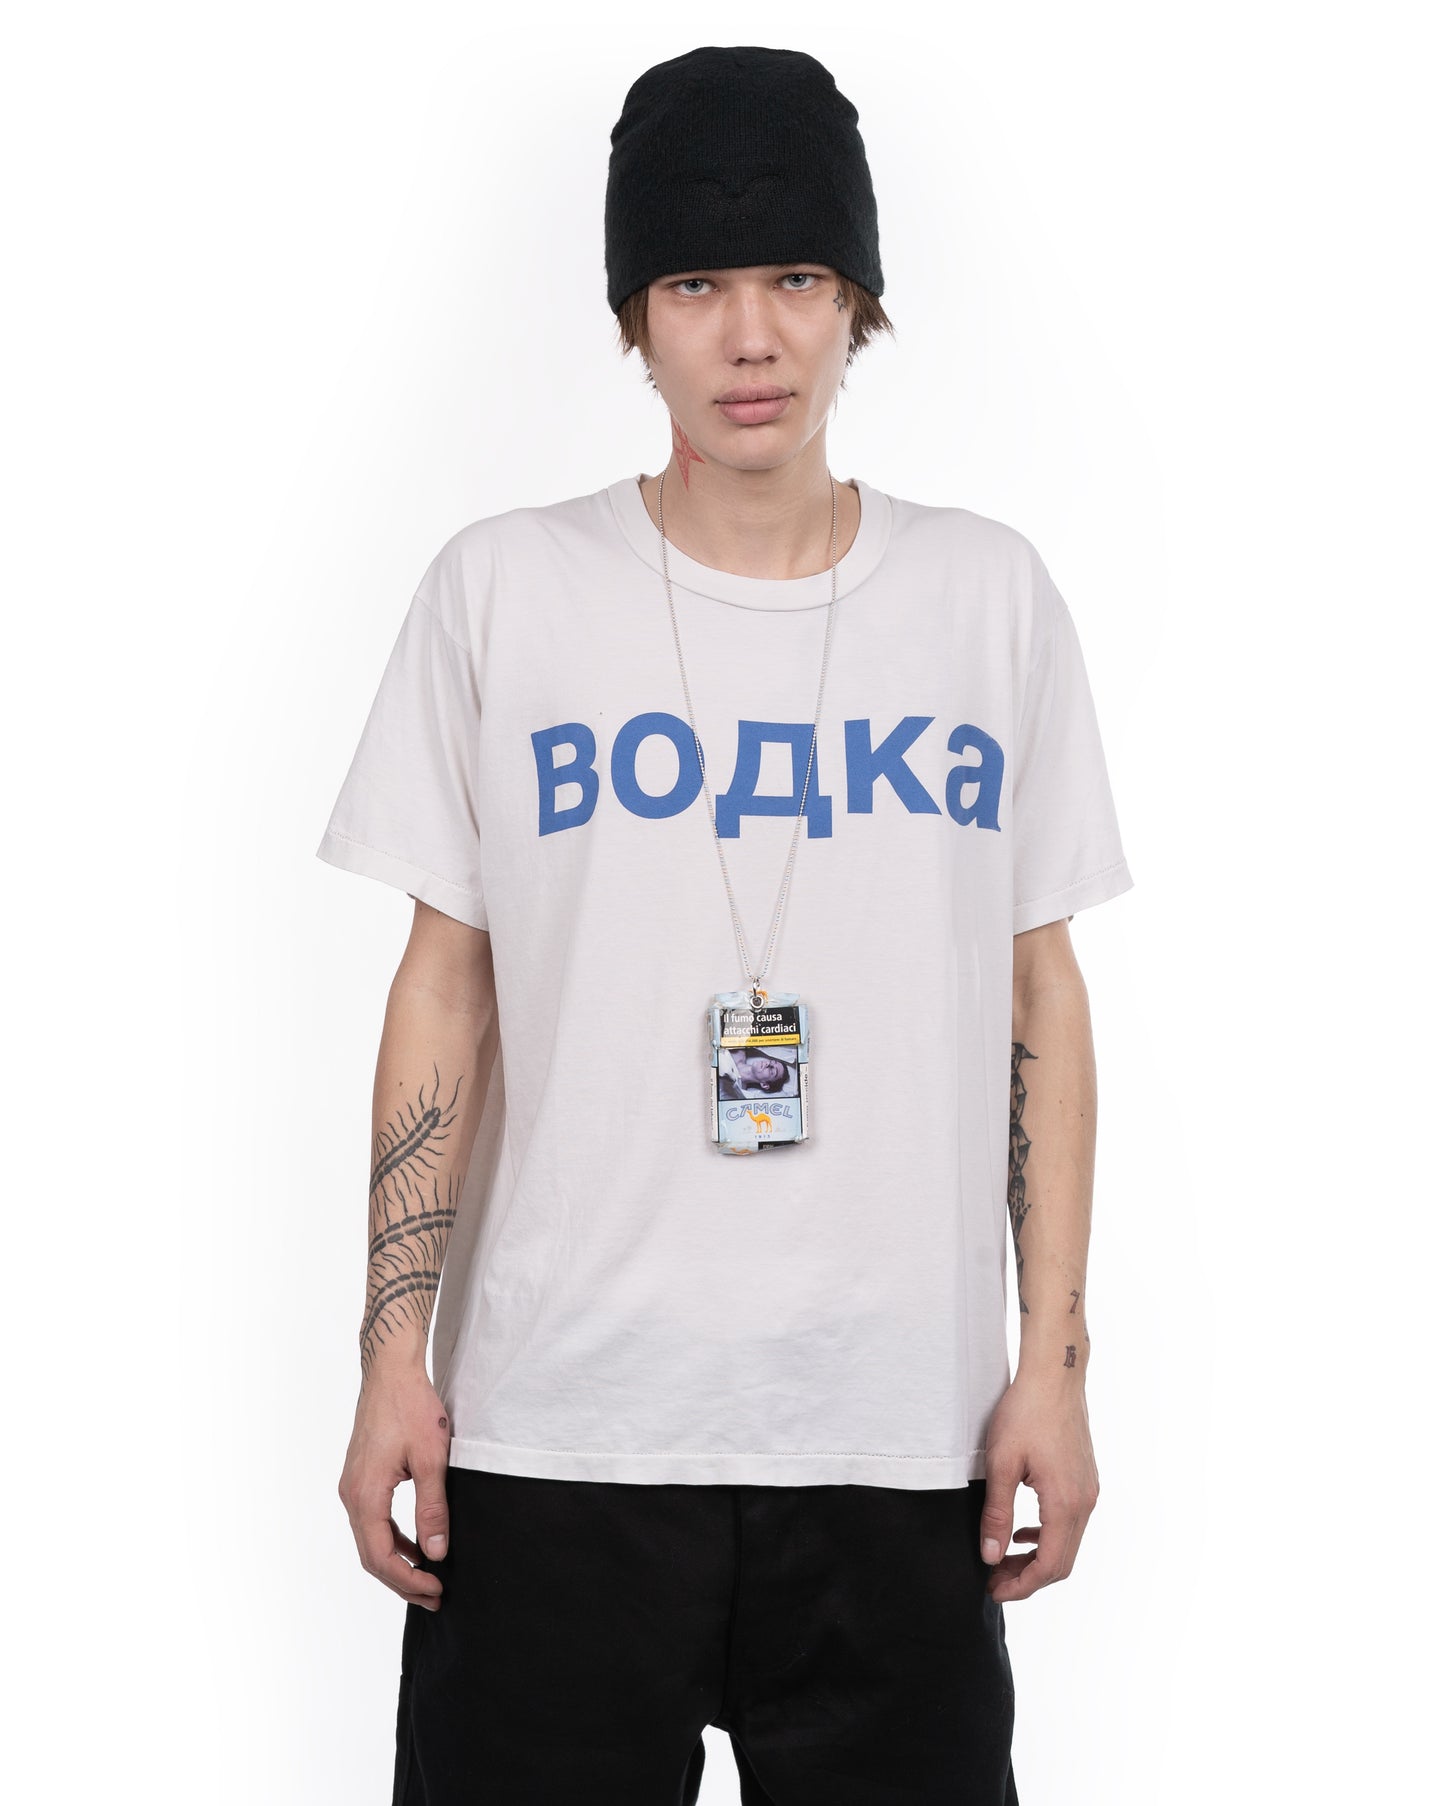 Bodka T-shirt: Vintage White